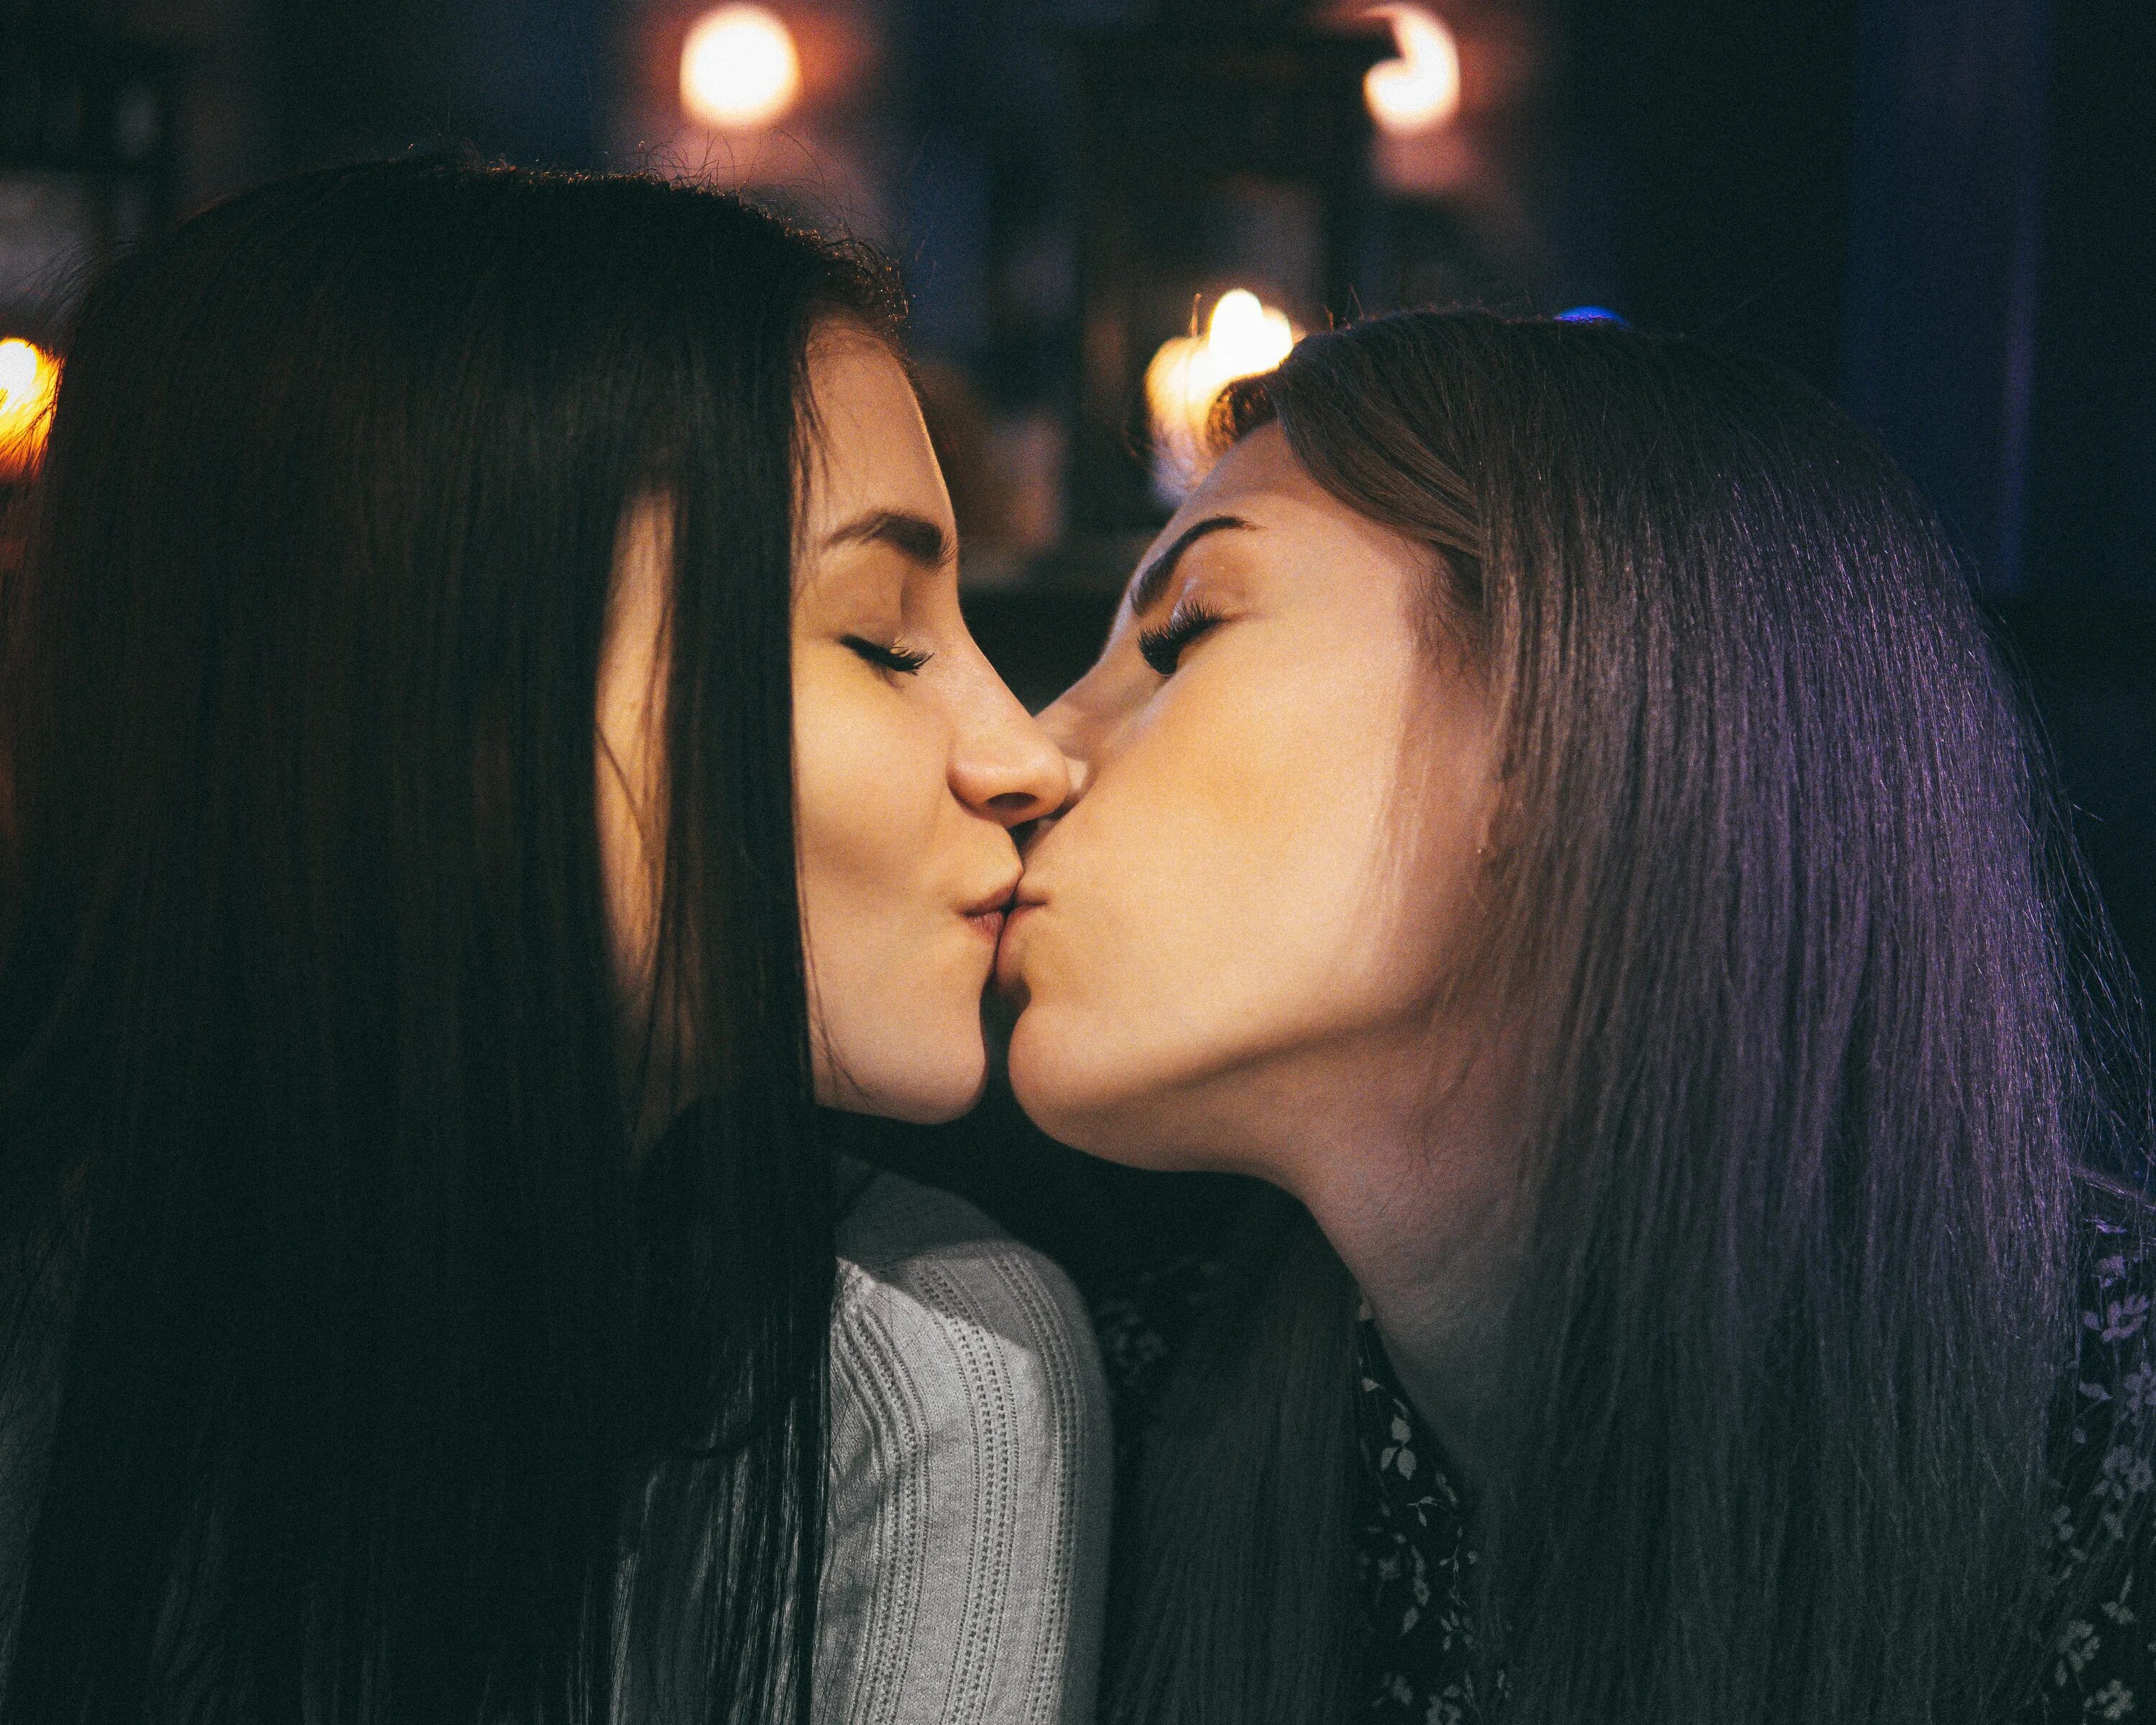 Lesbian 12. Поцелуй девушек. Поцелуй двух девушек. Красивый лесбийский поцелуй. Девушка целует девушку.